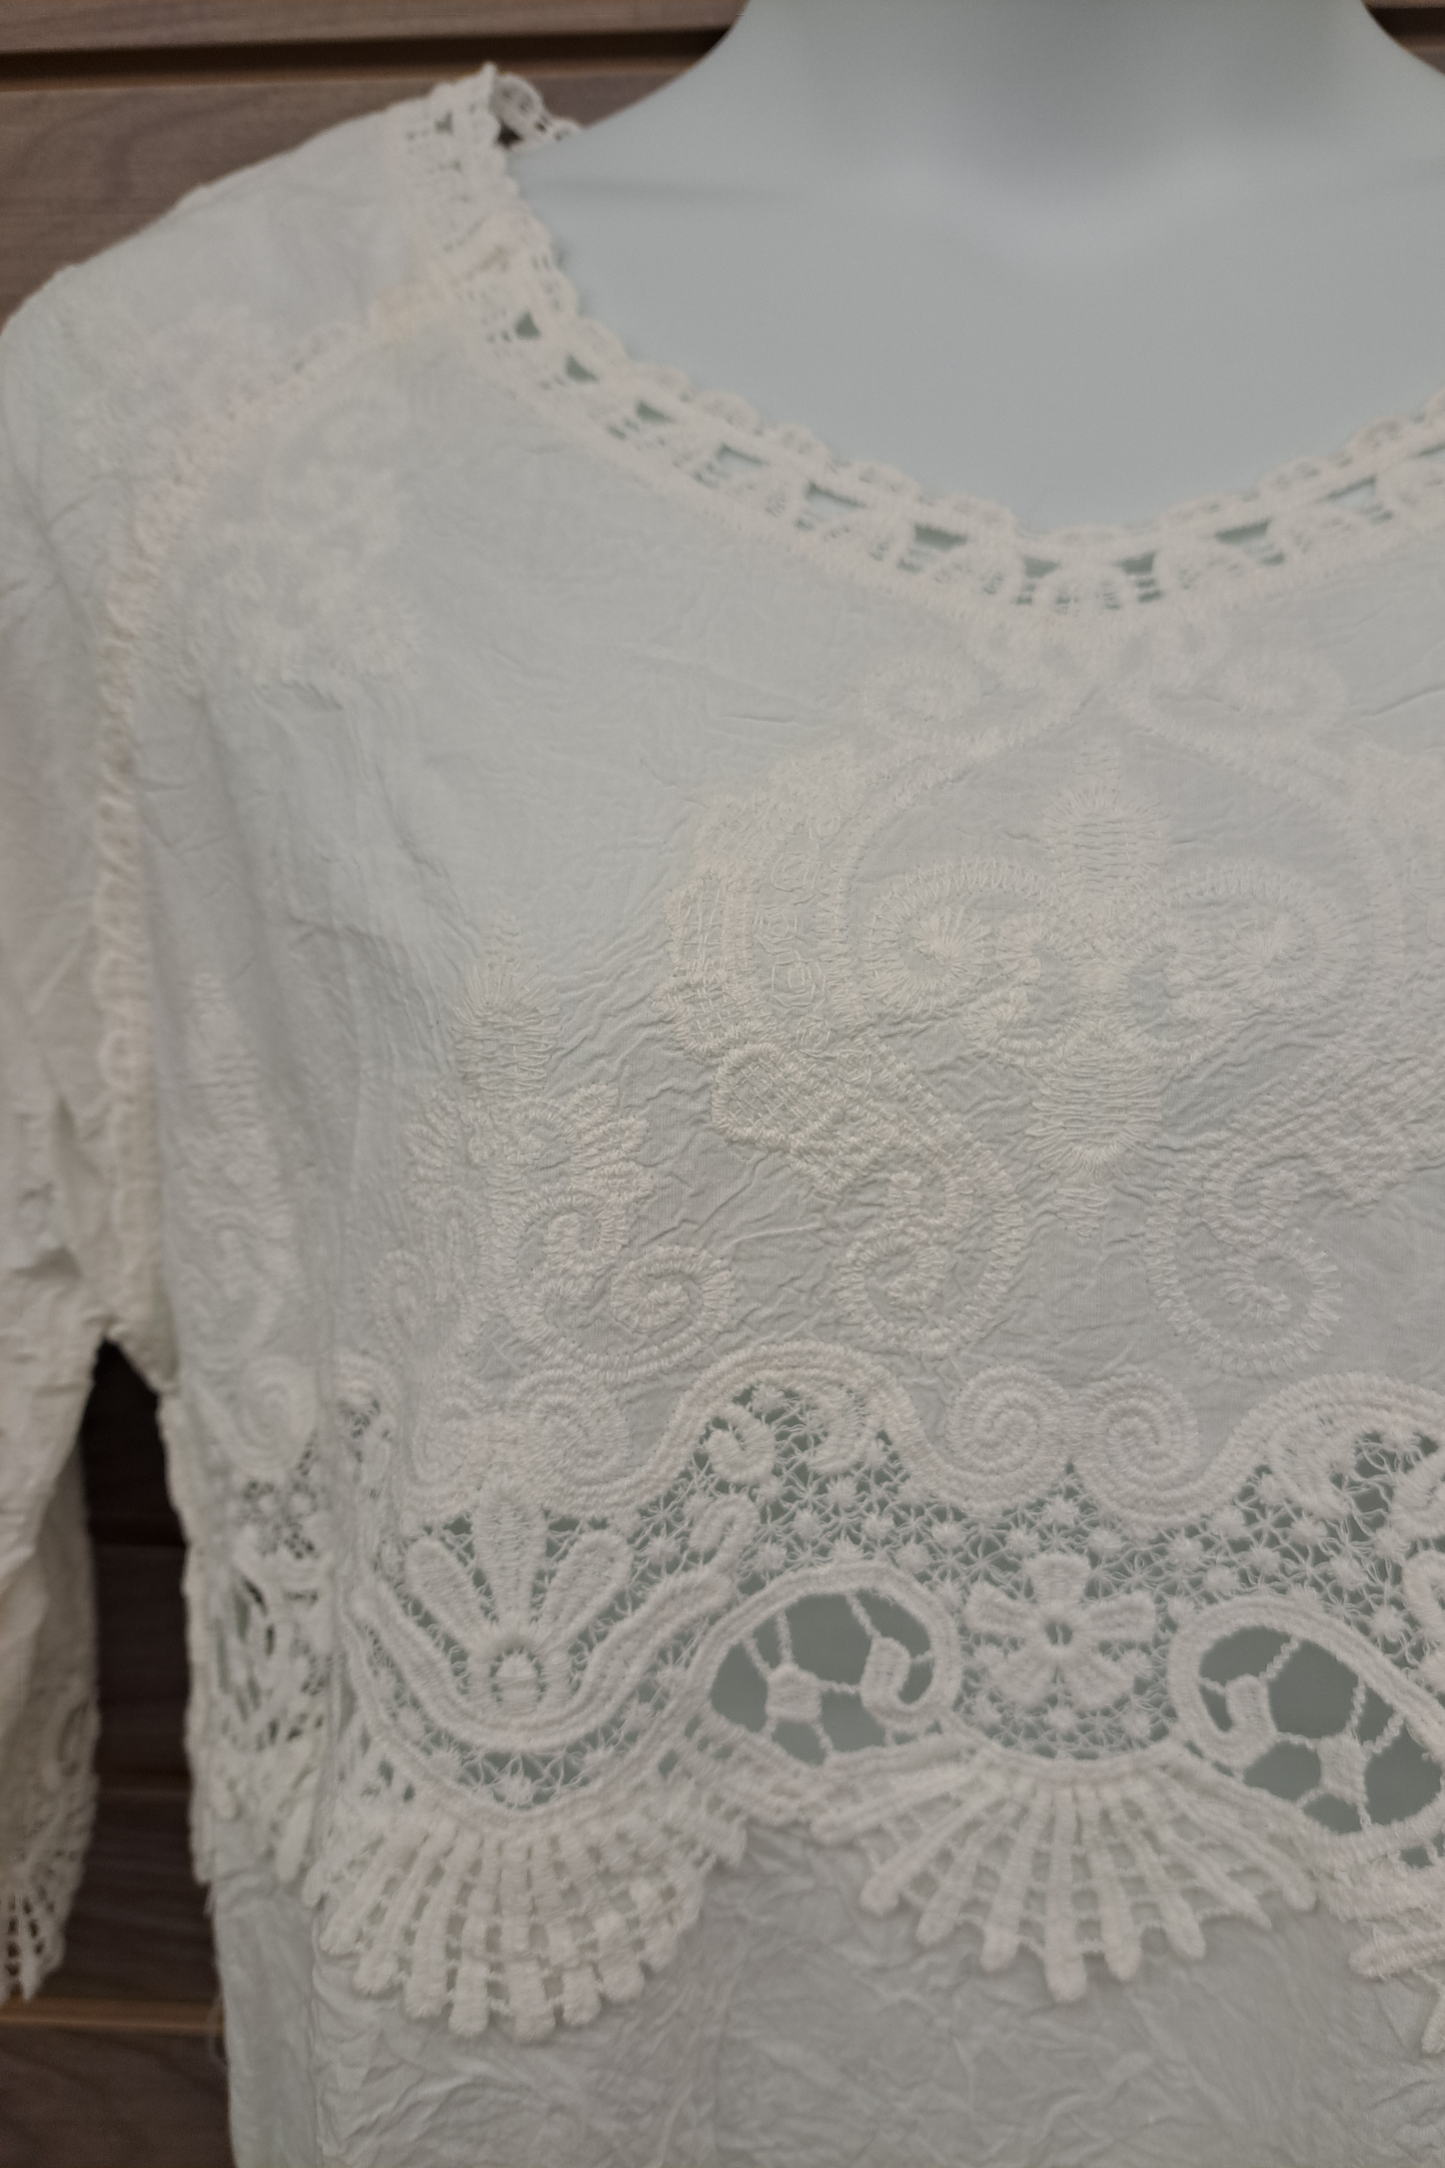 Cotton & lace white blouse